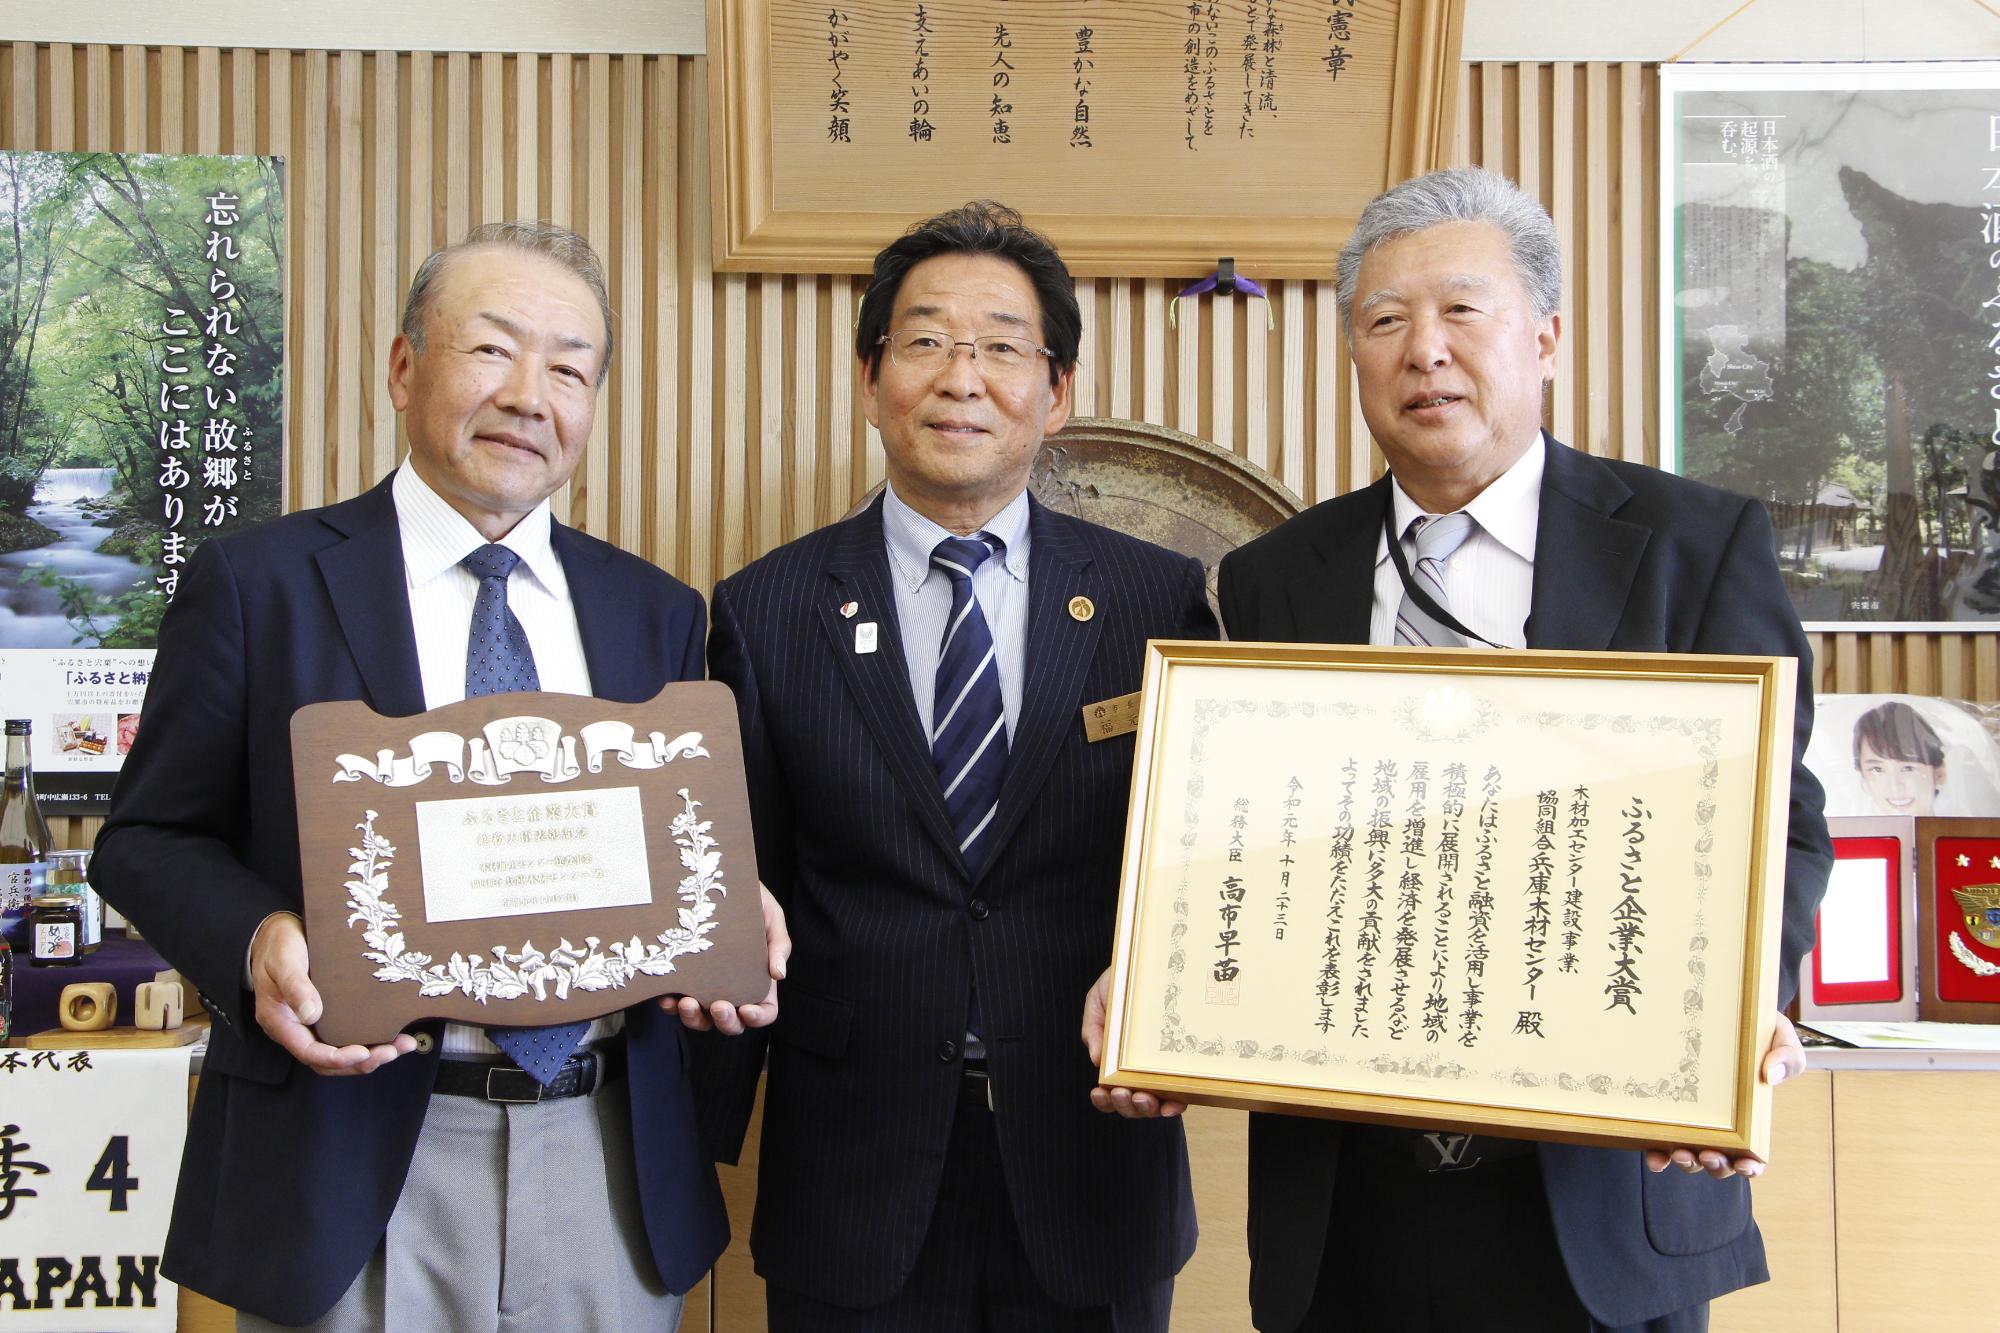 表彰状と盾を持った木材センター役員二人と市長が並んでいる写真